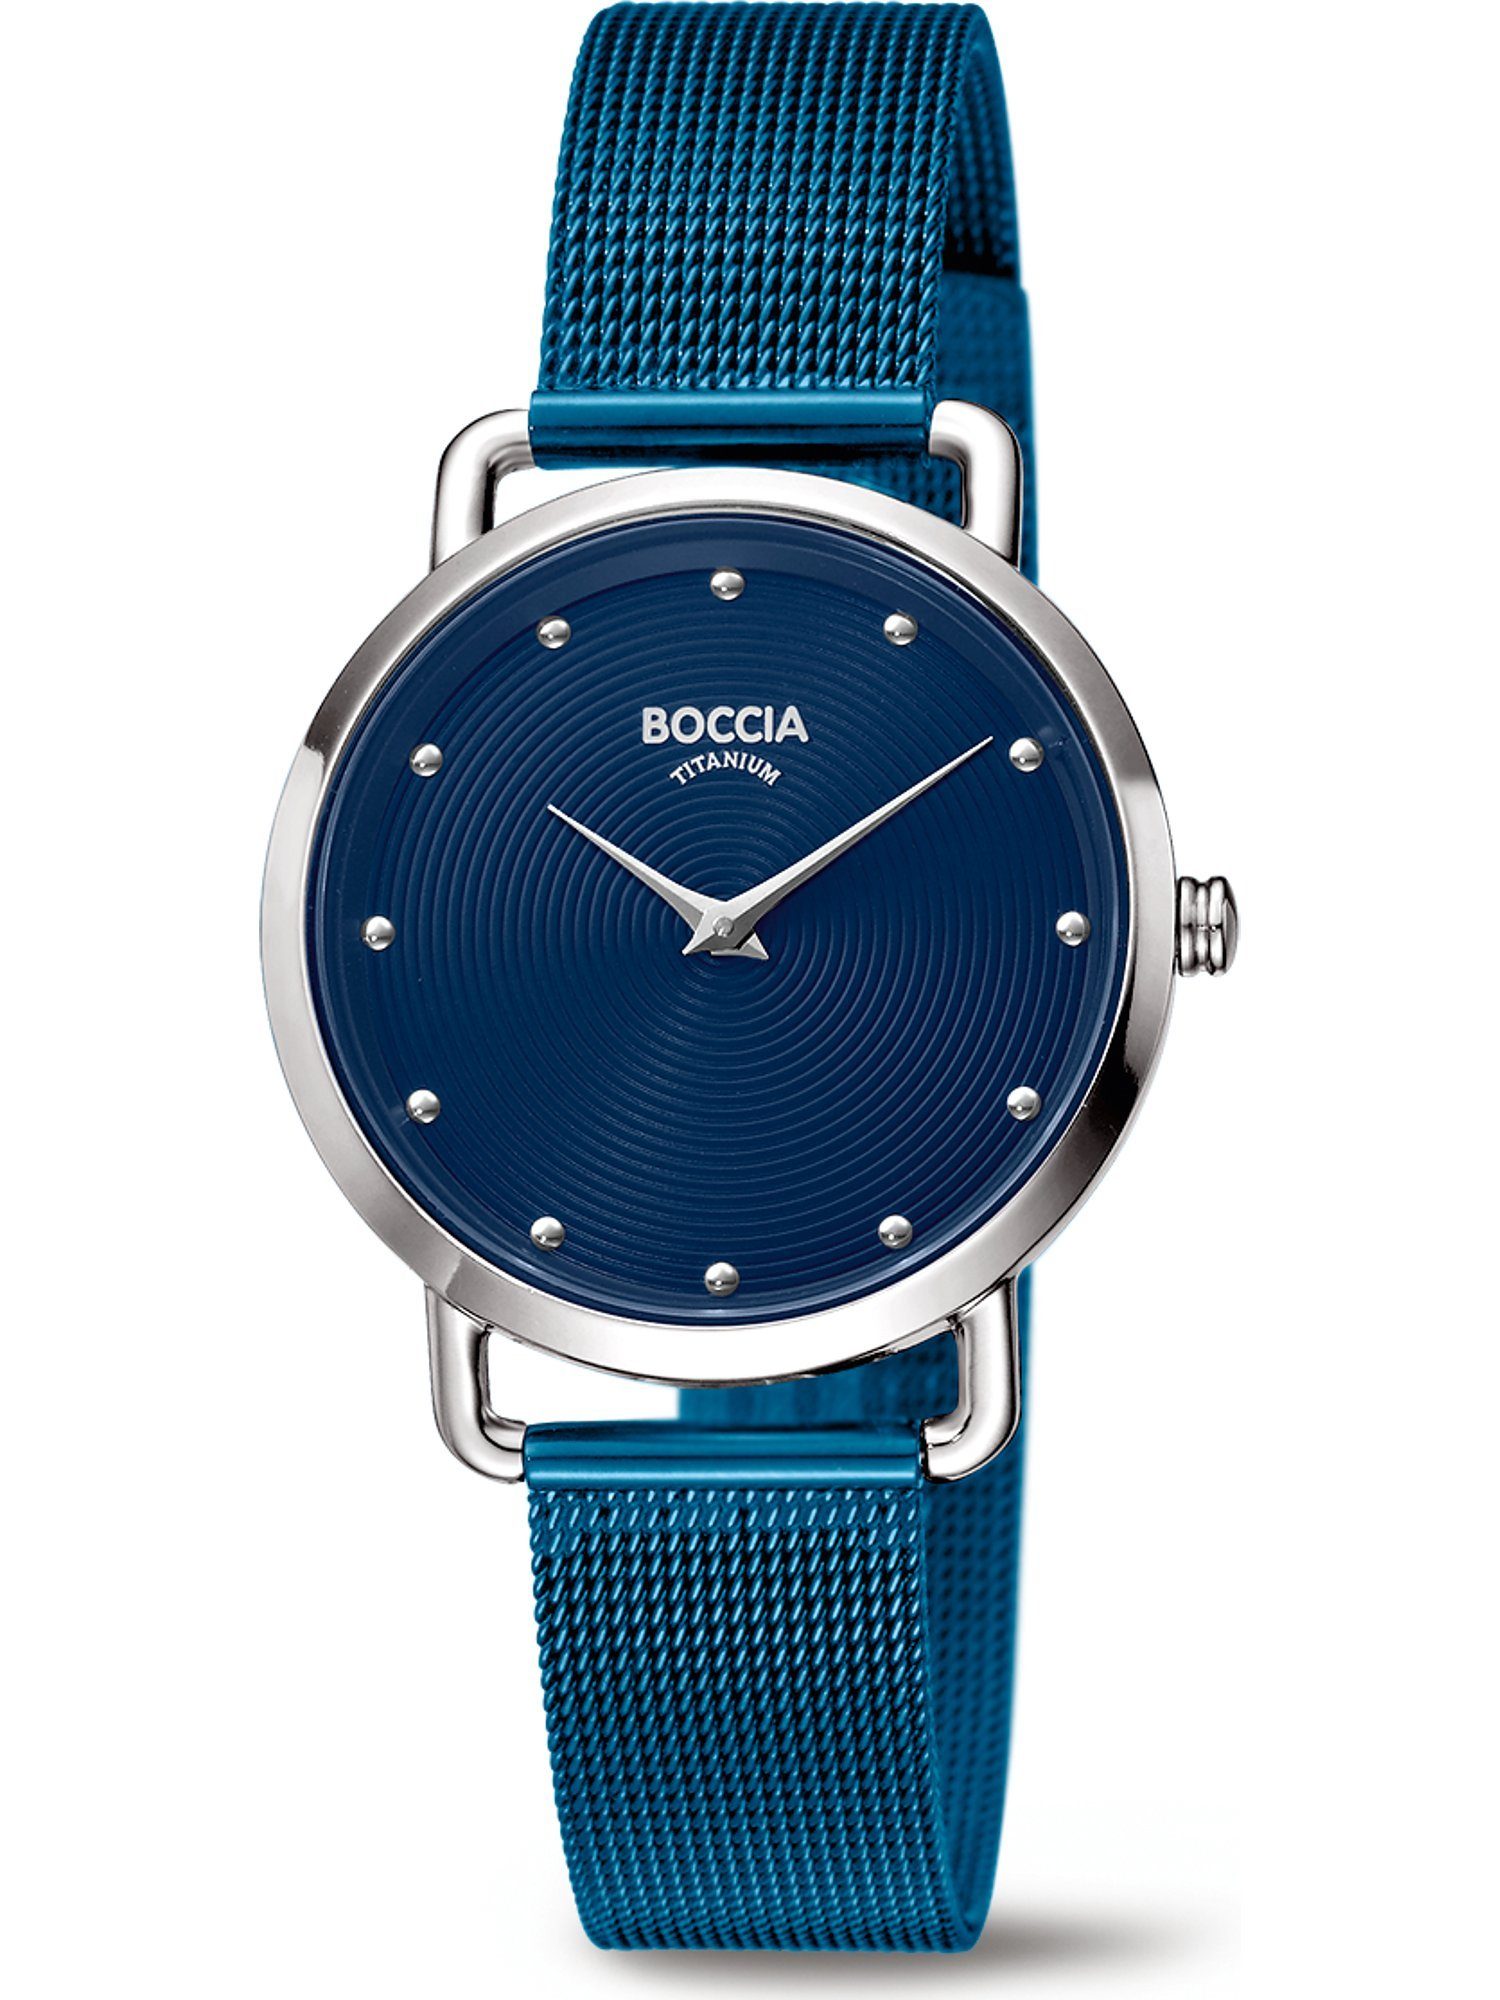 Damen-Uhren Quarz, Boccia Quarzuhr blau Analog Boccia Klassikuhr